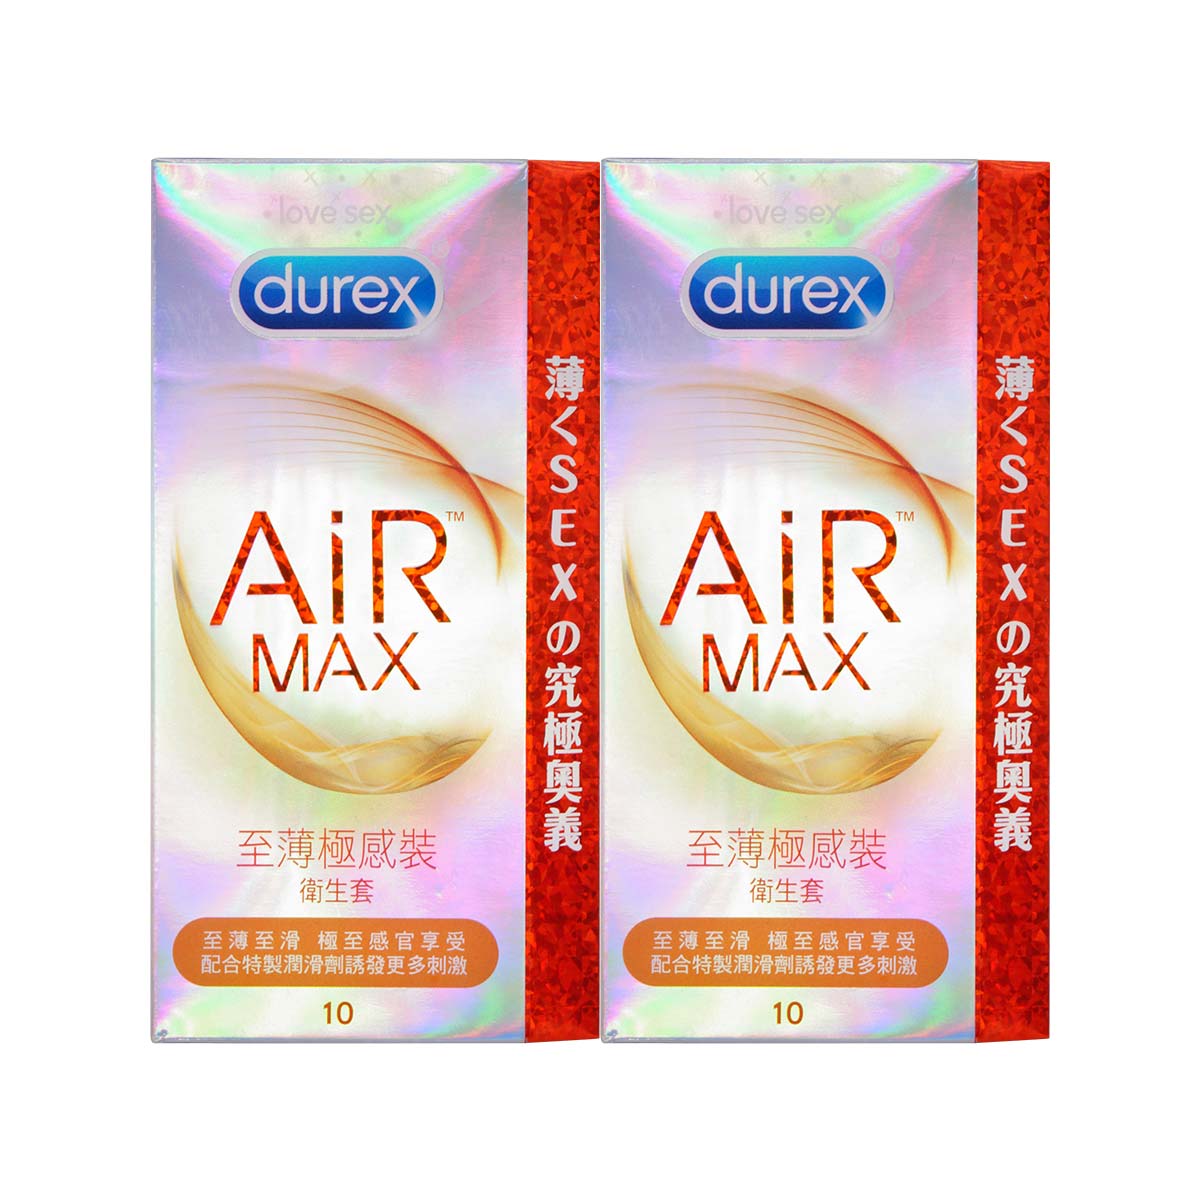 Durex Air Max Combo Set 20 Pieces Condom-p_2